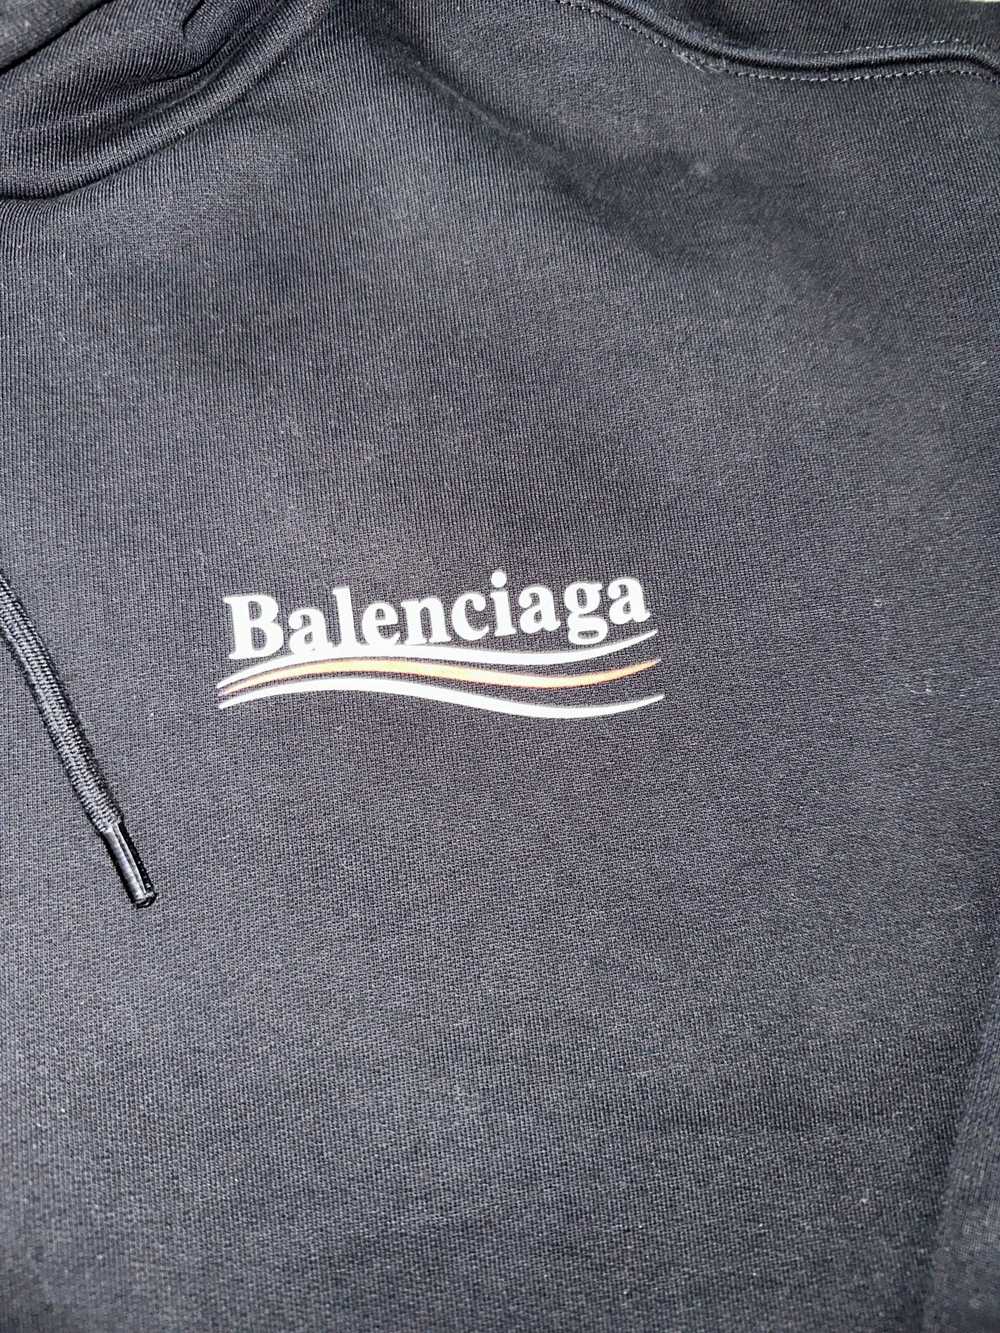 Balenciaga Balenciaga Campaign Hoodie - image 2